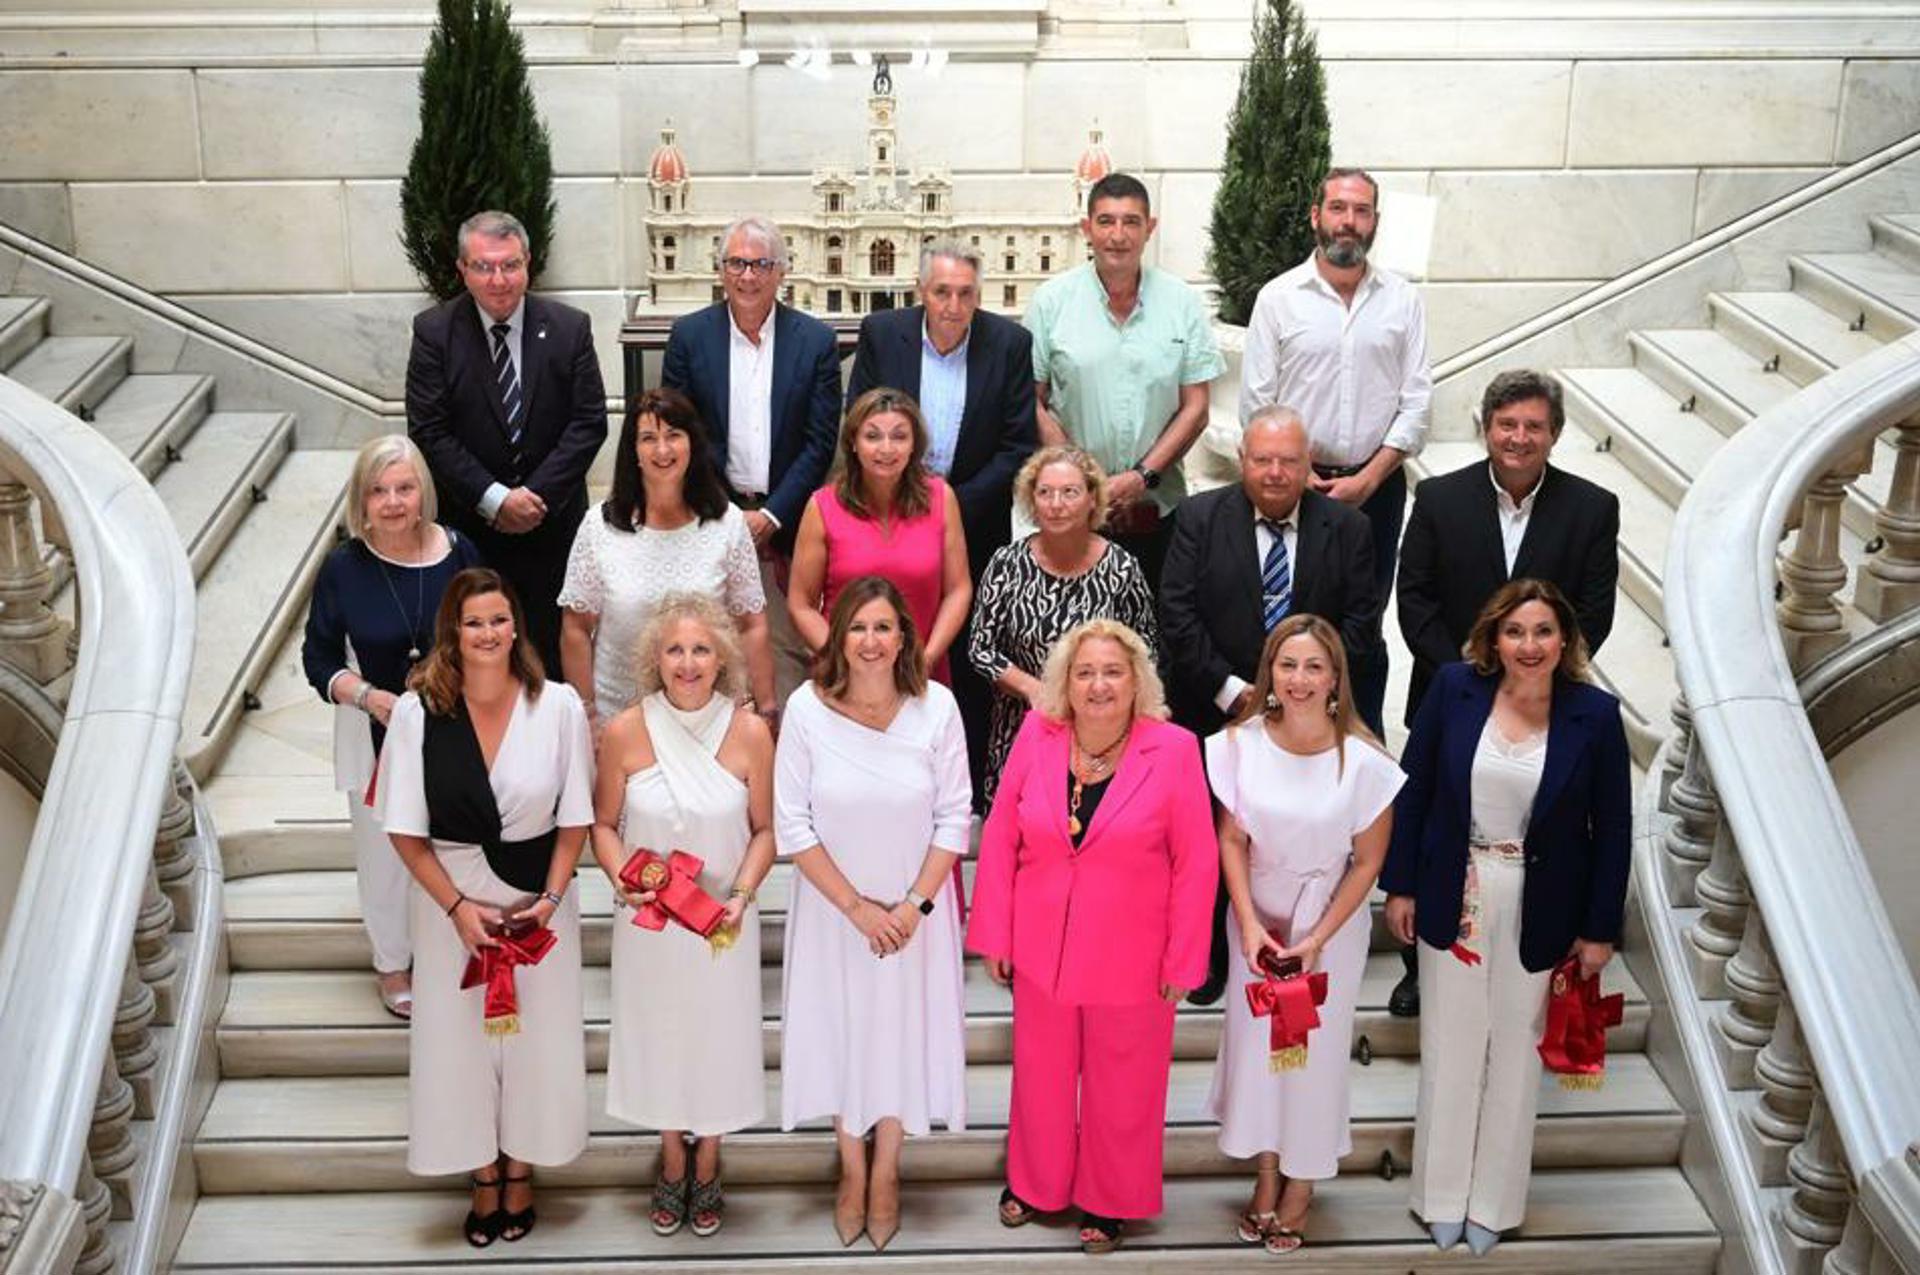 La alcaldesa de València, María José Catalá (3ª izq, primera fila), junto a los alcaldes pedáneos, que han tomado hoy posesión de sus cargos, en una imagen difundida por el PP.